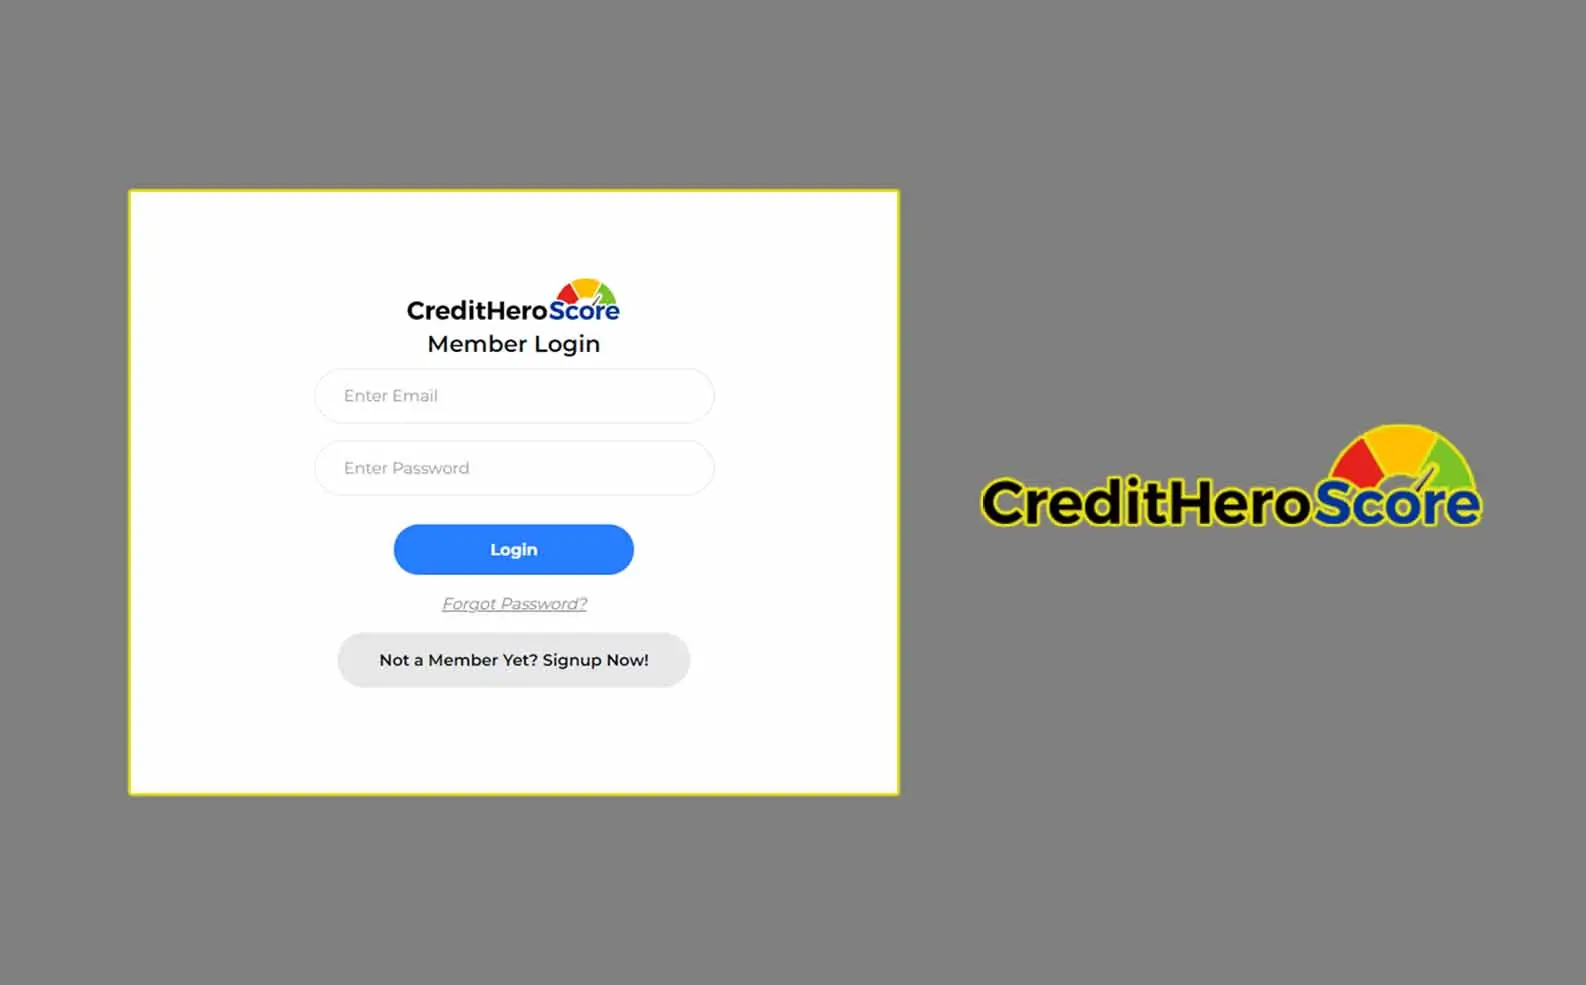 Credit Hero Score Login at Creditheroscore.com